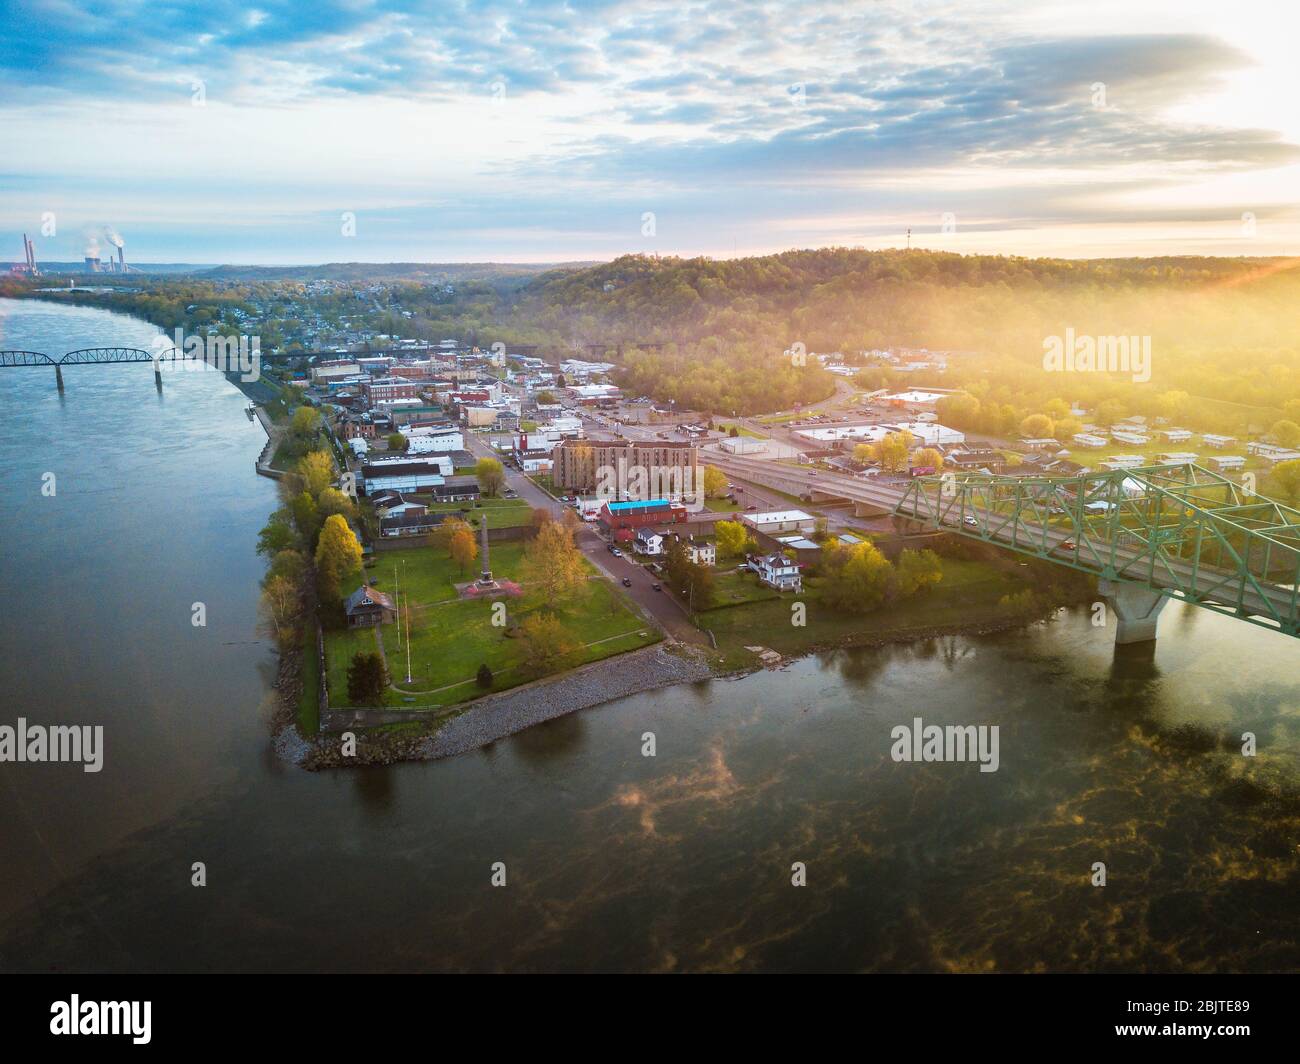 Die aufgehende Sonne wirft ihr Leuchten über die Stadt Point Pleasant West Virginia von oben gesehen, wo die beiden Flüsse Kanawha und Ohio treffen. Stockfoto